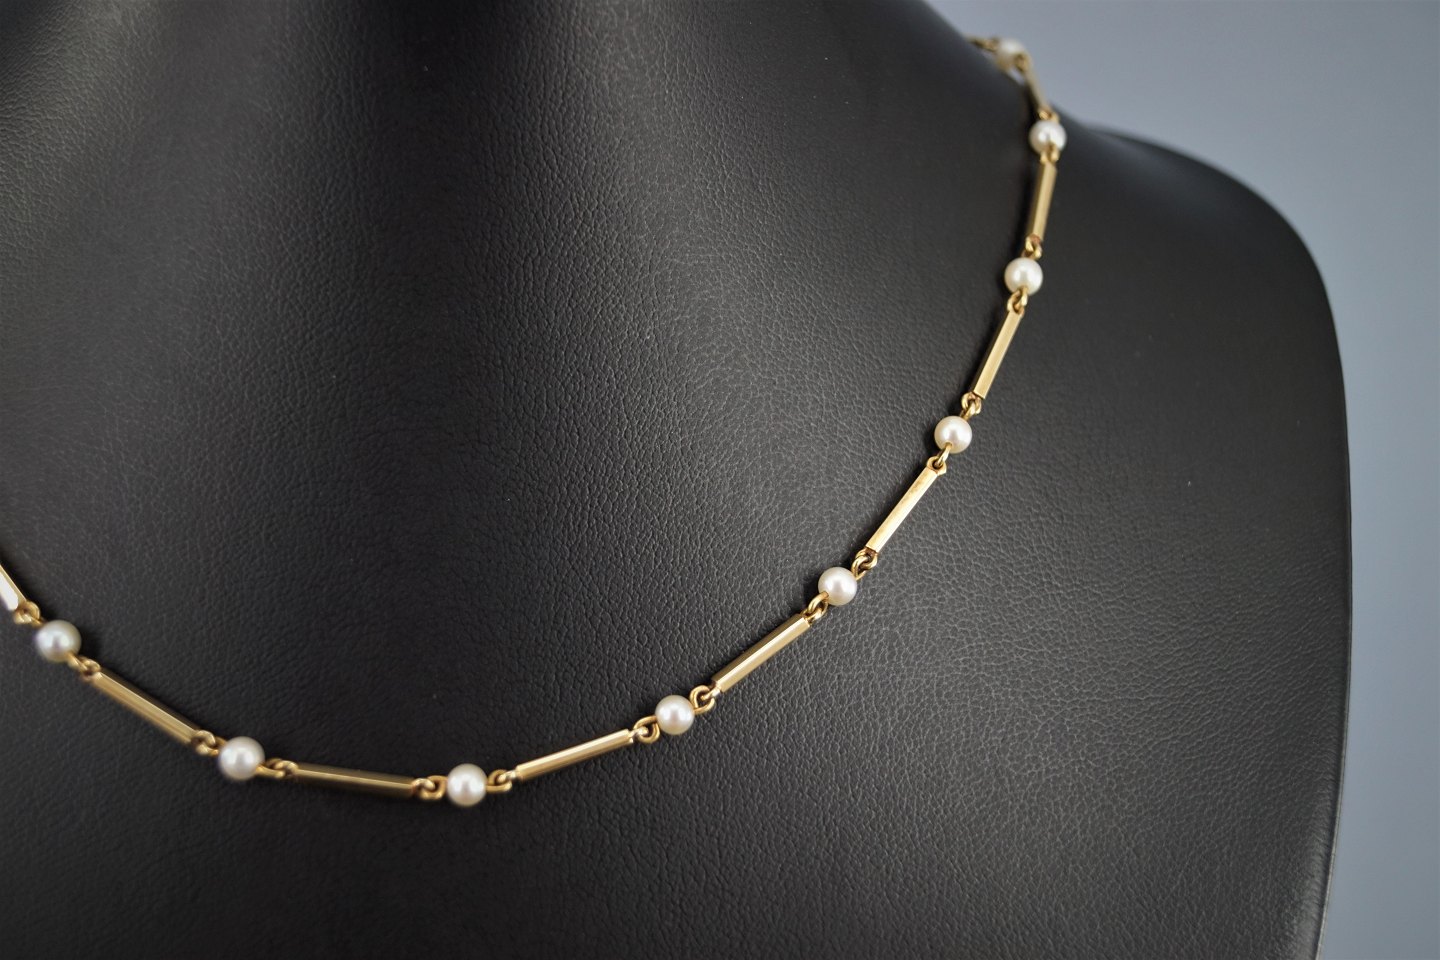 reb sortie Tak for din hjælp Bræmer-Jensen; Pind-perle halskæde af 14 kt. guld